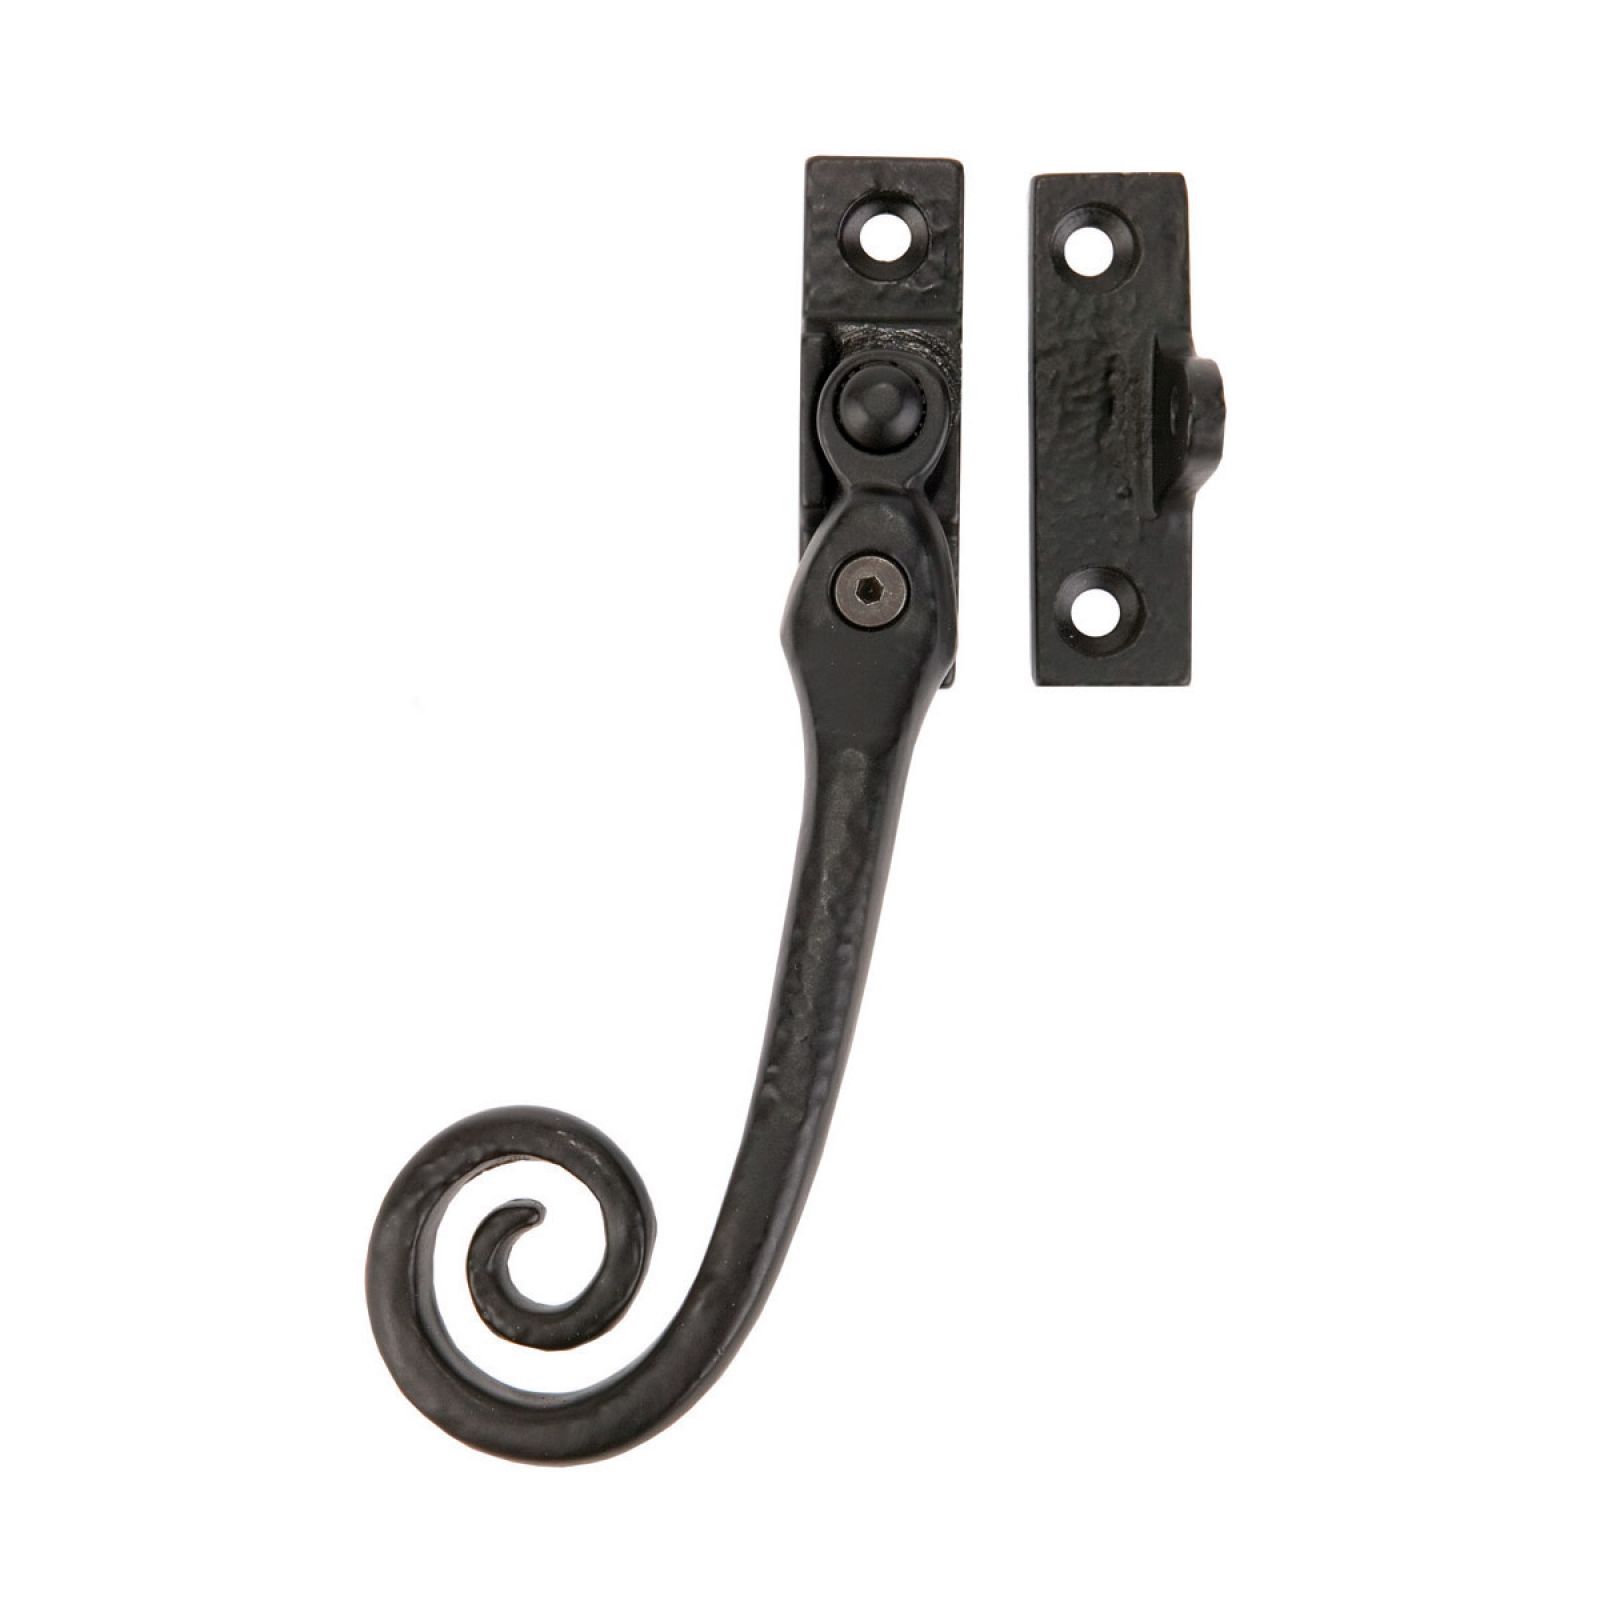 Locking casement fastener + key - left hand